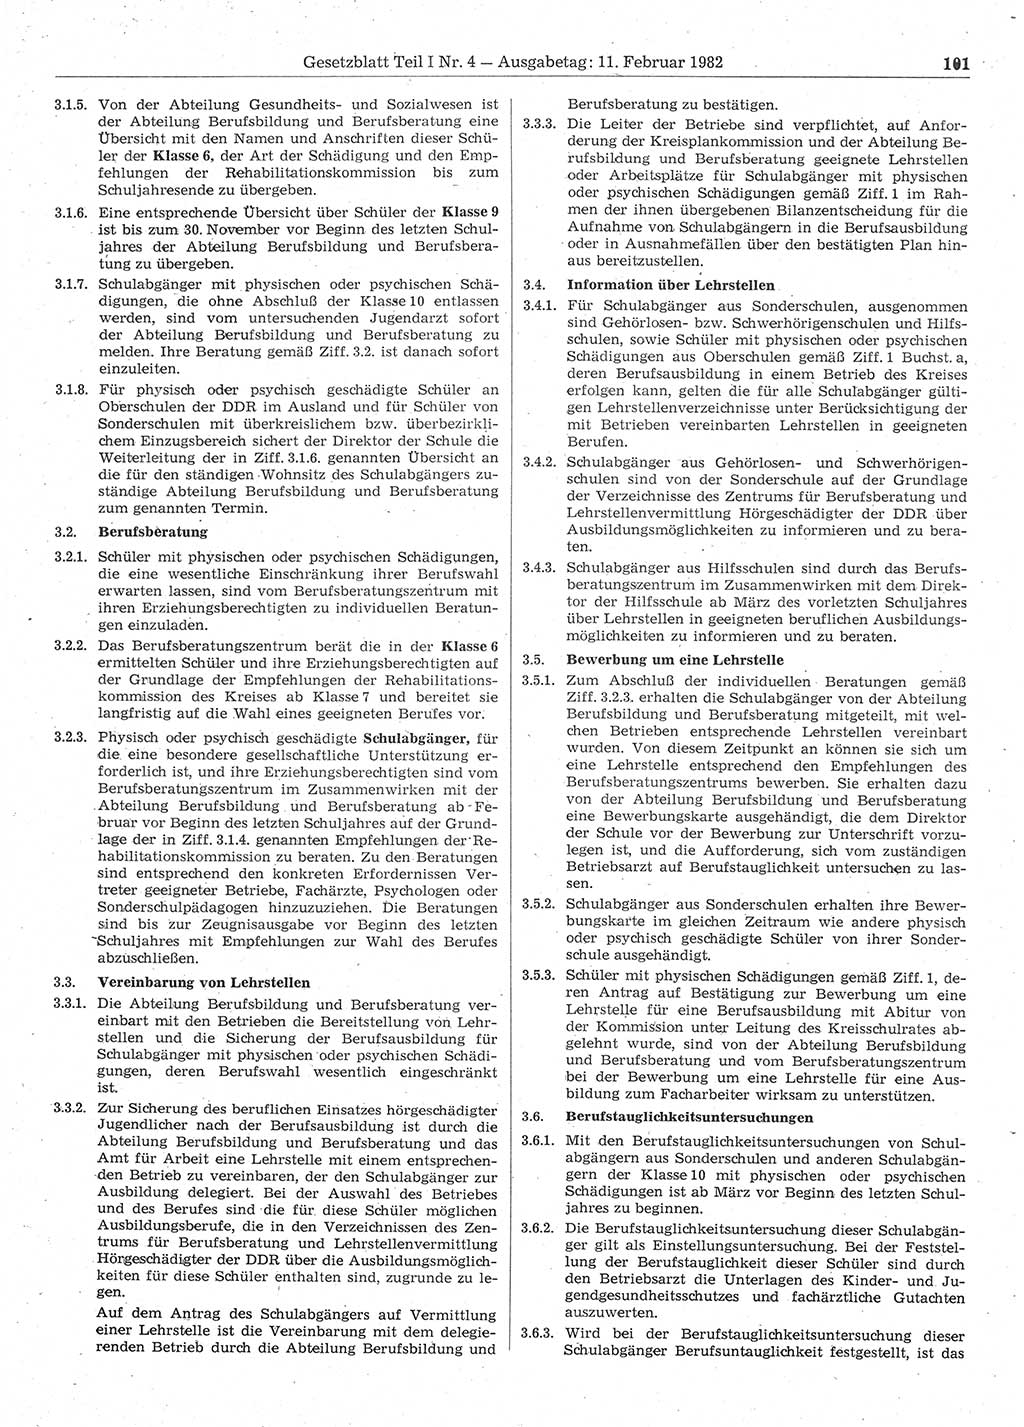 Gesetzblatt (GBl.) der Deutschen Demokratischen Republik (DDR) Teil Ⅰ 1982, Seite 101 (GBl. DDR Ⅰ 1982, S. 101)